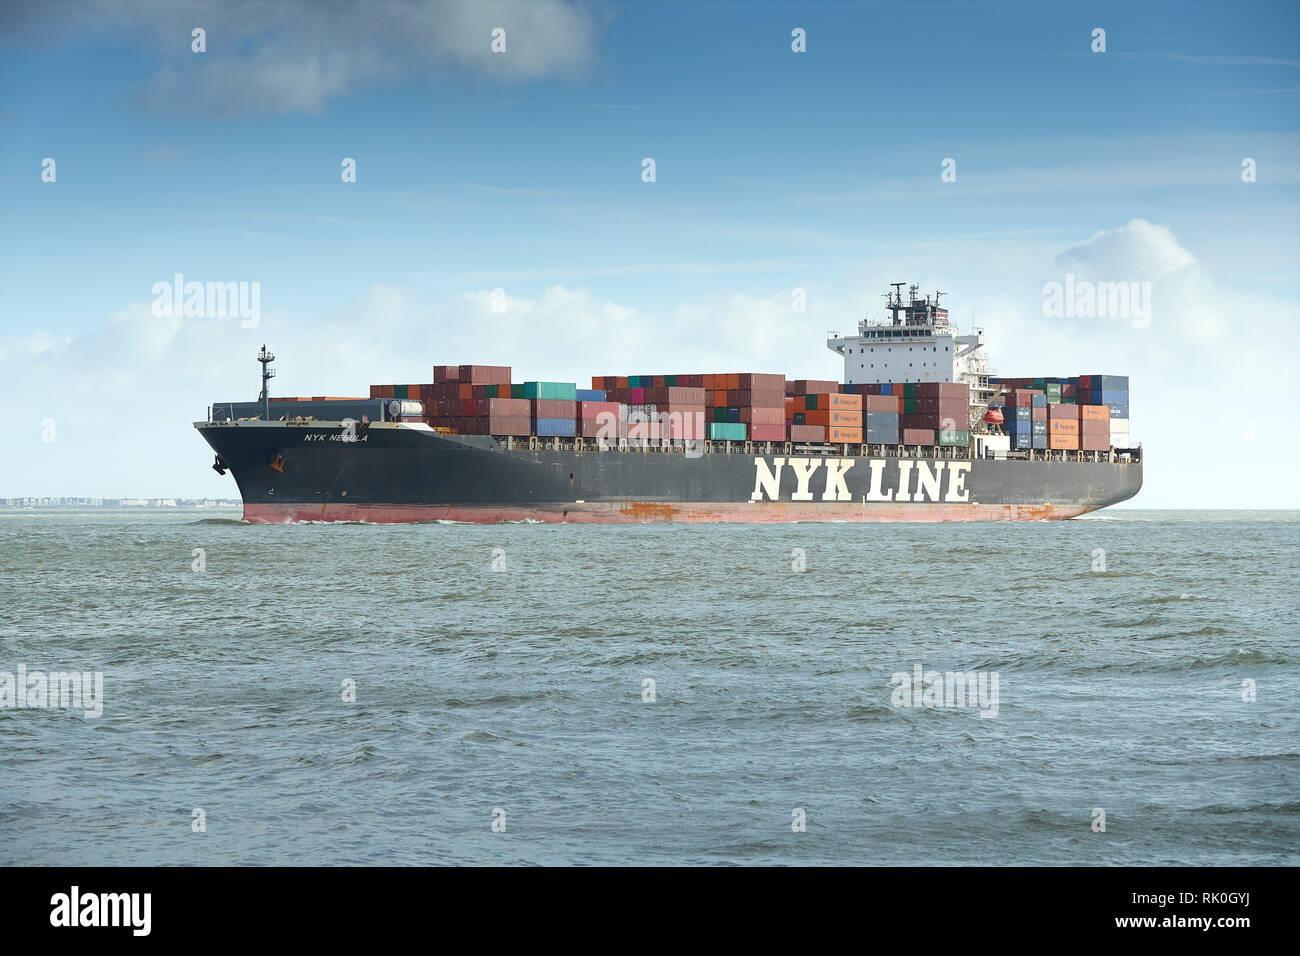 NYK Line Container Ship, NYK nébuleuse, approche du port de Southampton, Royaume-Uni, le 7 février 2019 Banque D'Images